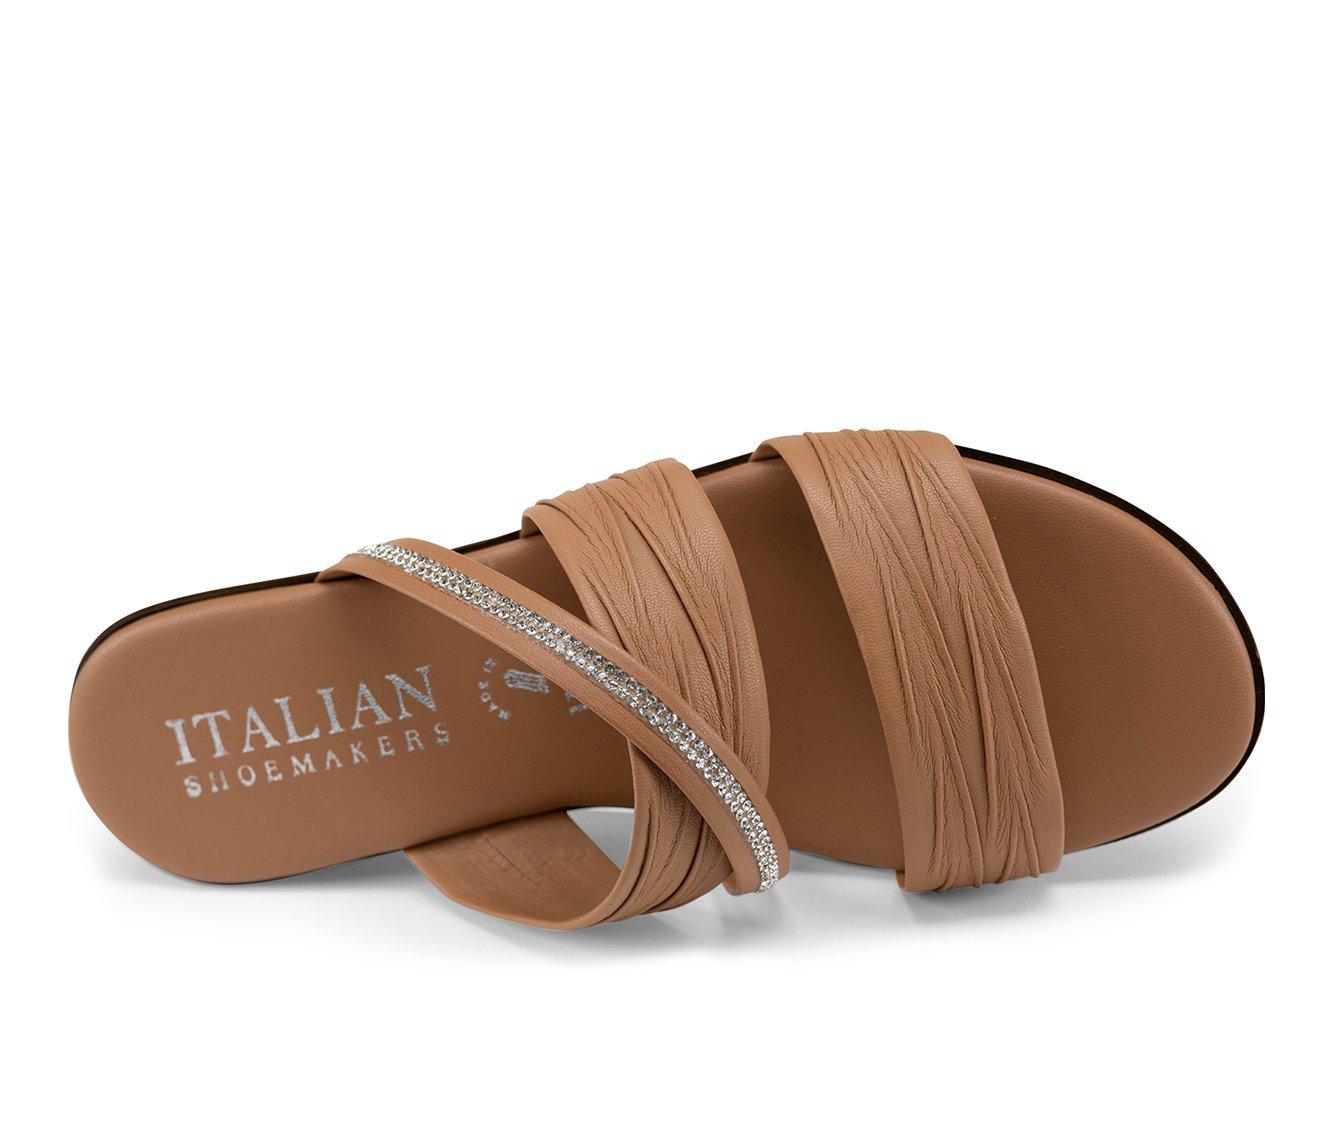 Women's Italian Shoemakers Hollis Wedge Sandals